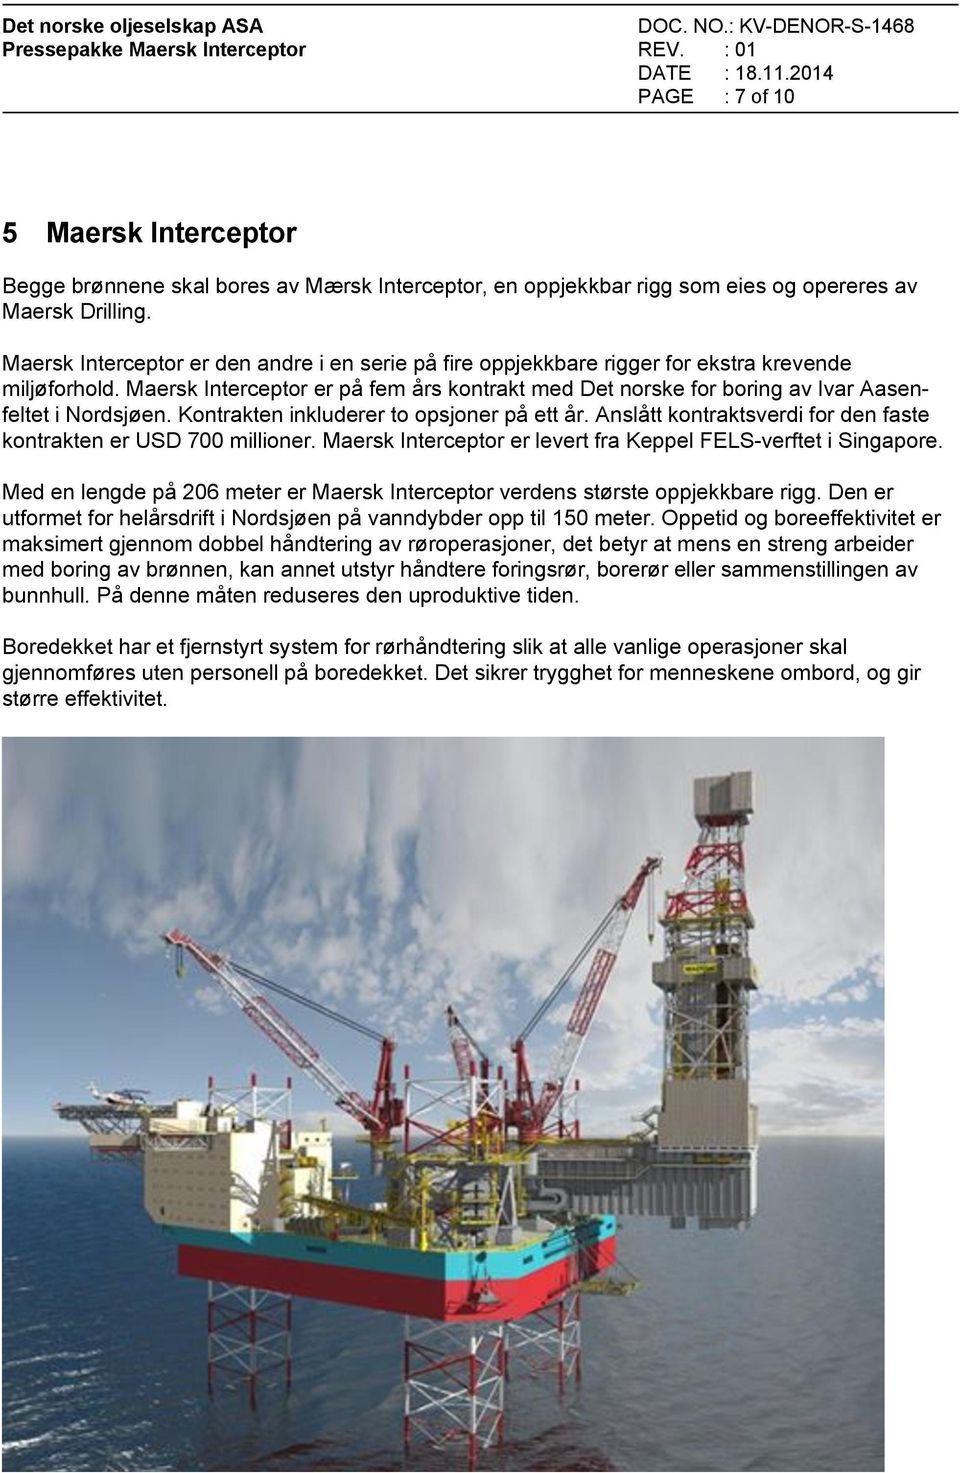 Maersk Interceptor er på fem års kontrakt med Det norske for boring av Ivar Aasenfeltet i Nordsjøen. Kontrakten inkluderer to opsjoner på ett år.